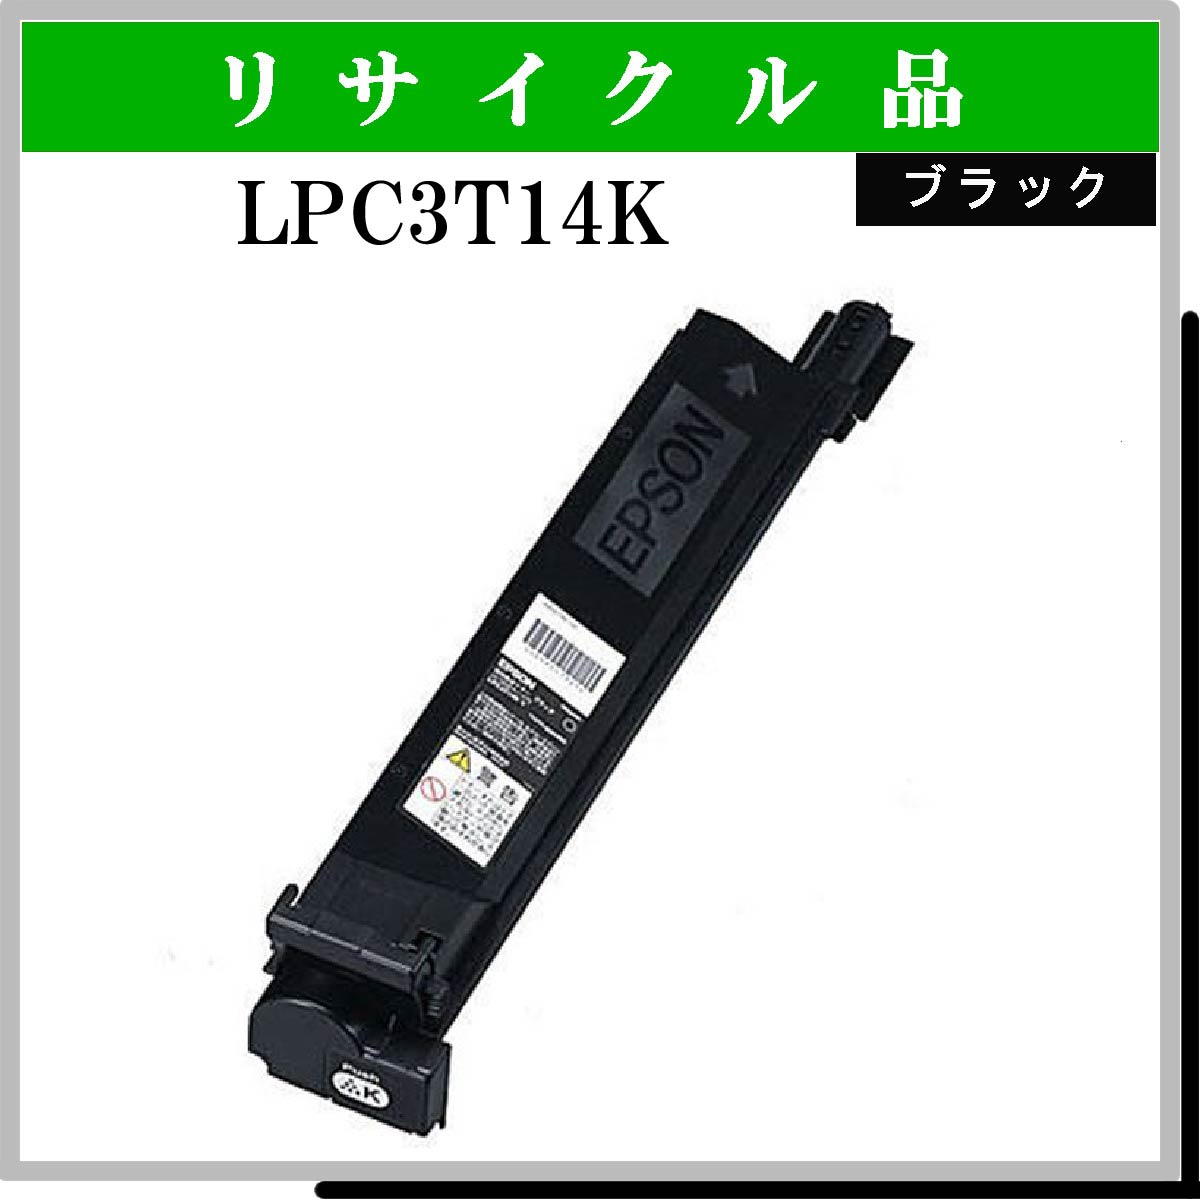 LPC3T14K